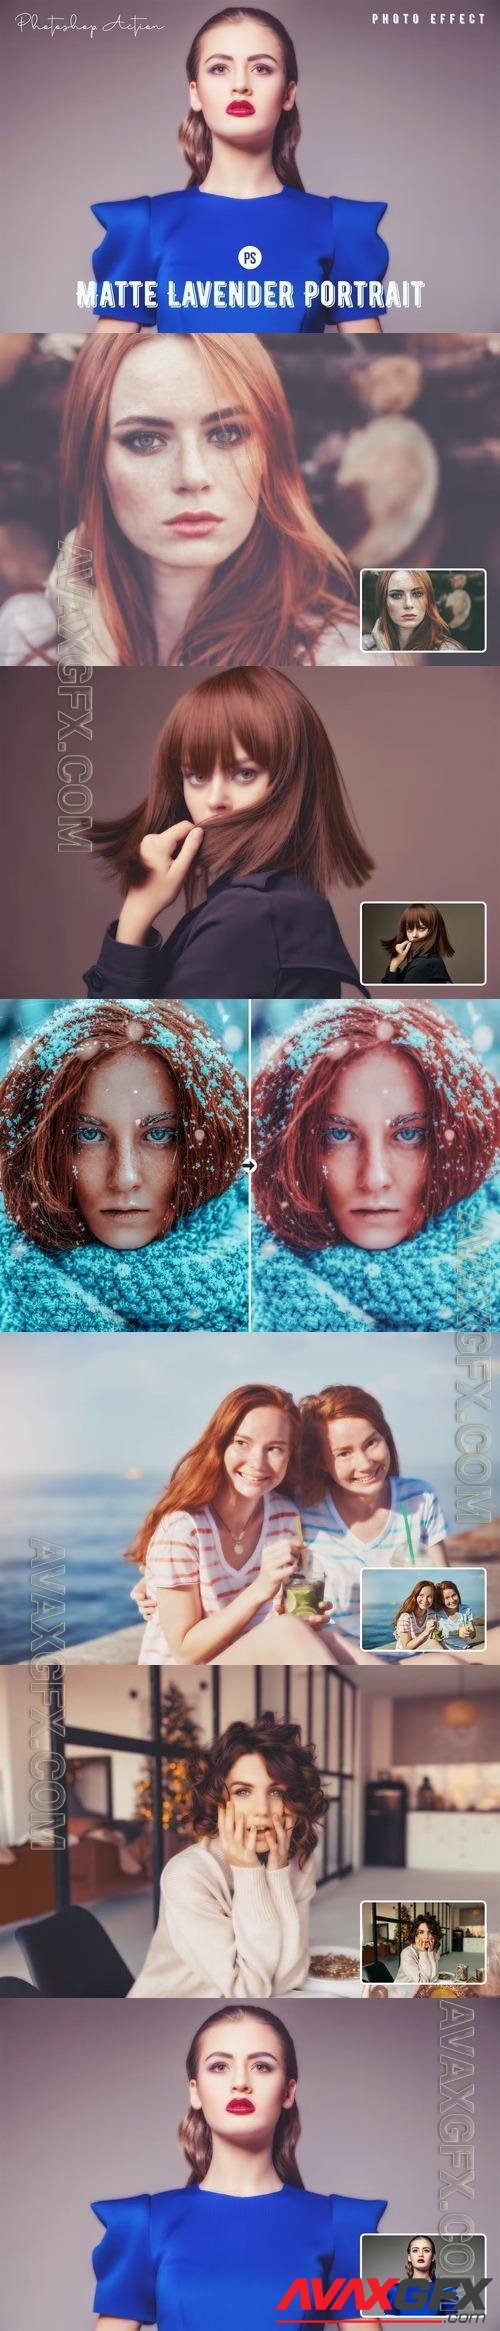 Matte Lavender Portrait Photoshop Action